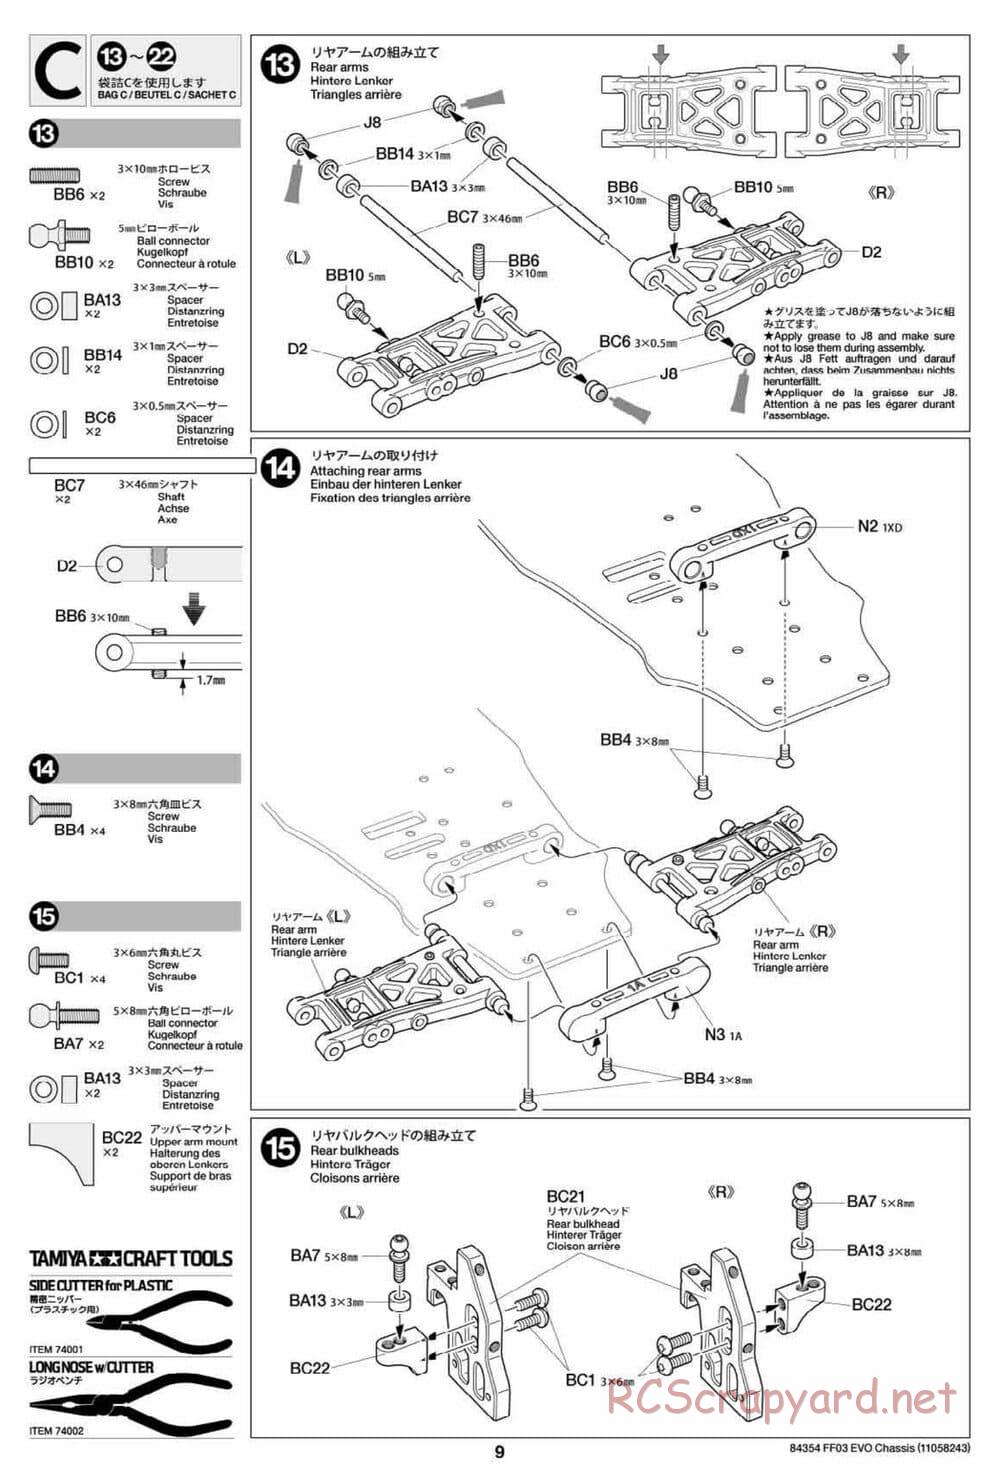 Tamiya - FF-03 Evo Chassis - Manual - Page 9